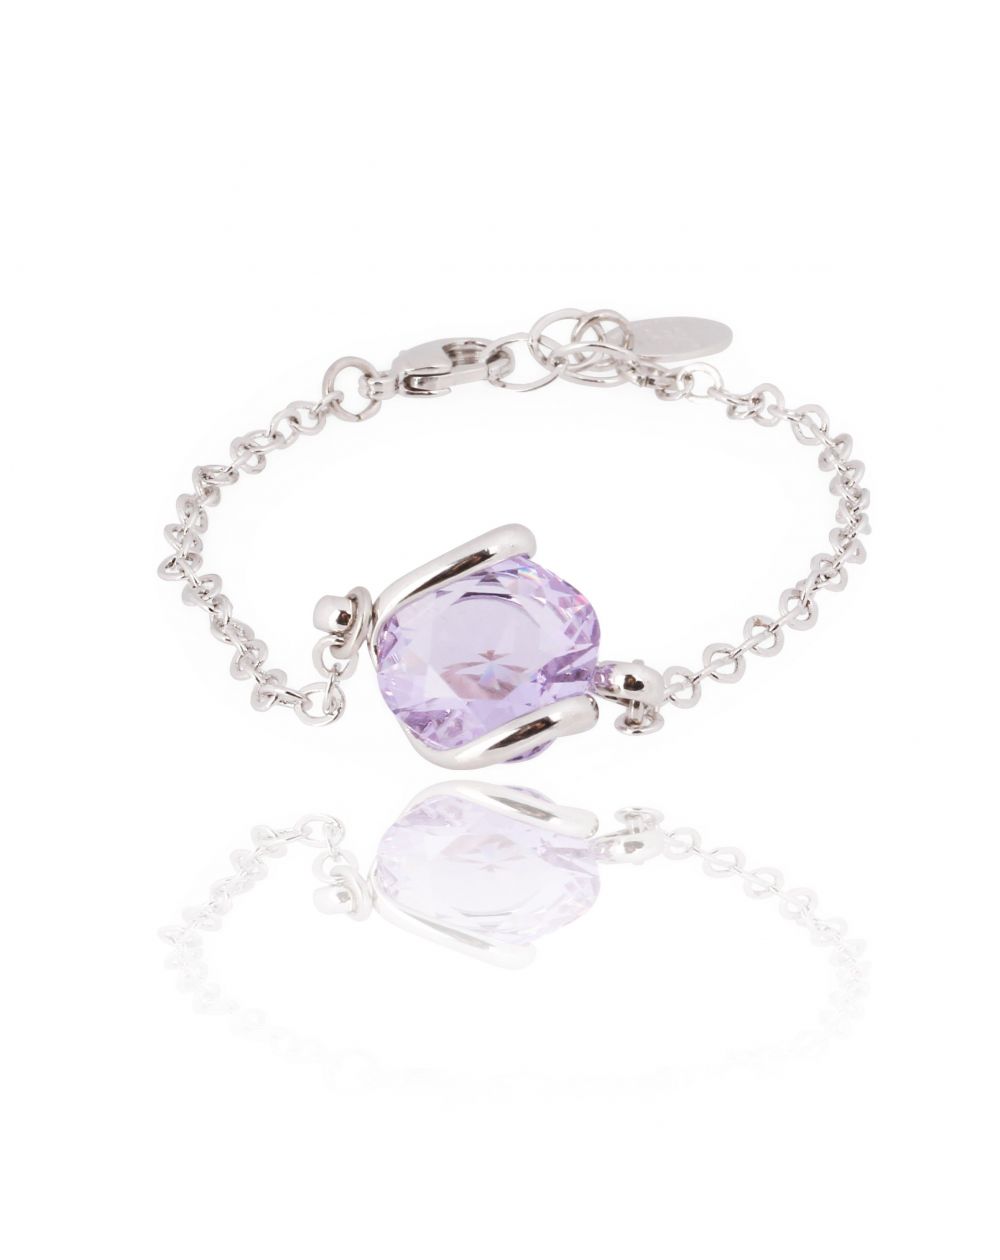 Andrea Marazzini bijoux - Bracelet cristal Swarovski lila